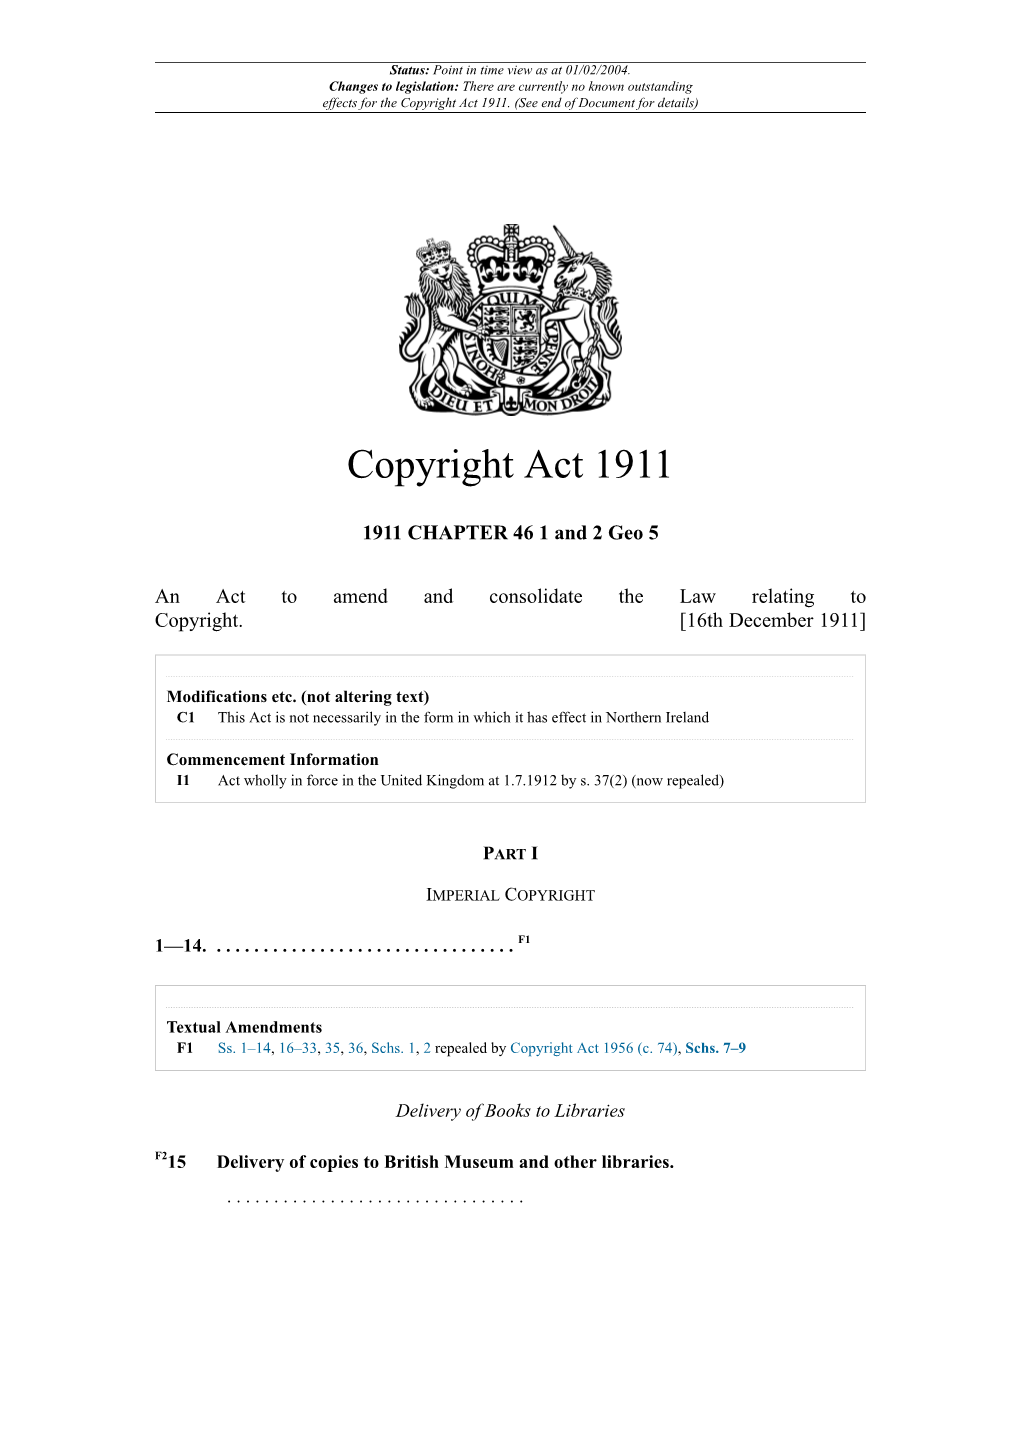 Copyright Act 1911